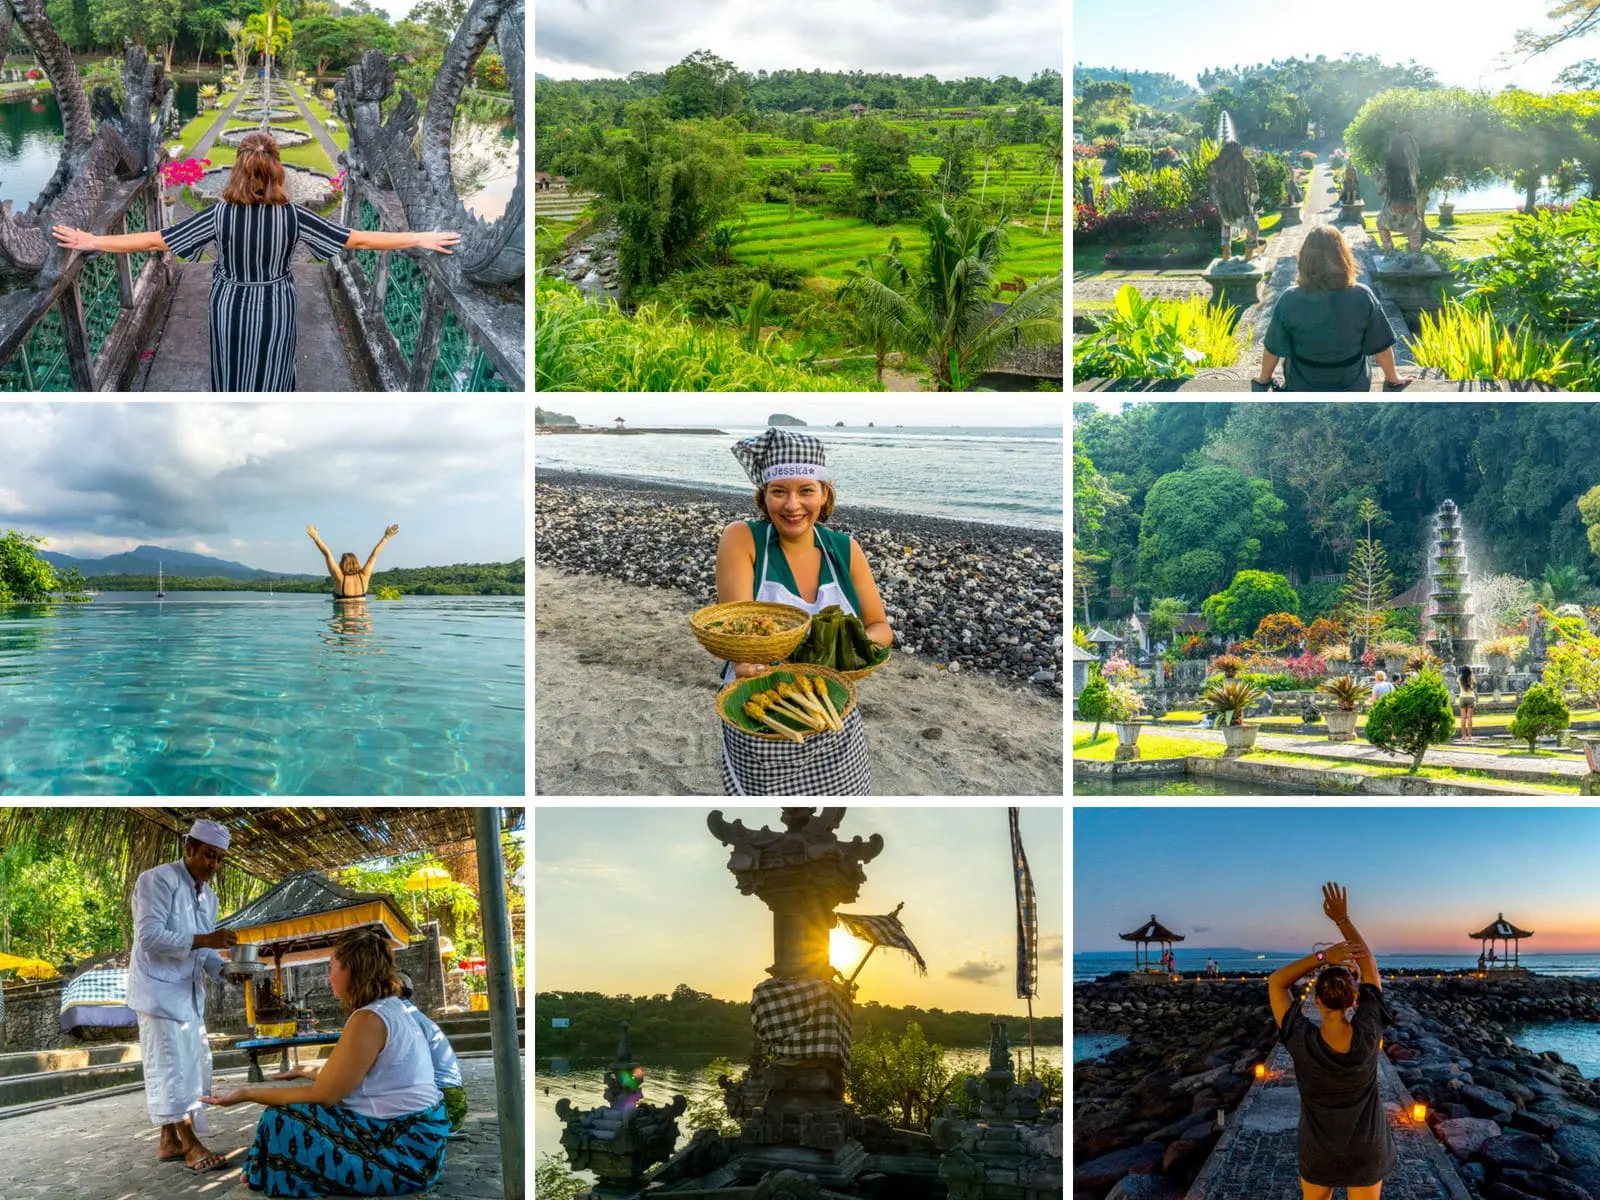 Bali Rundreise Route 7 Tage & Tipps zu versteckten Ecken